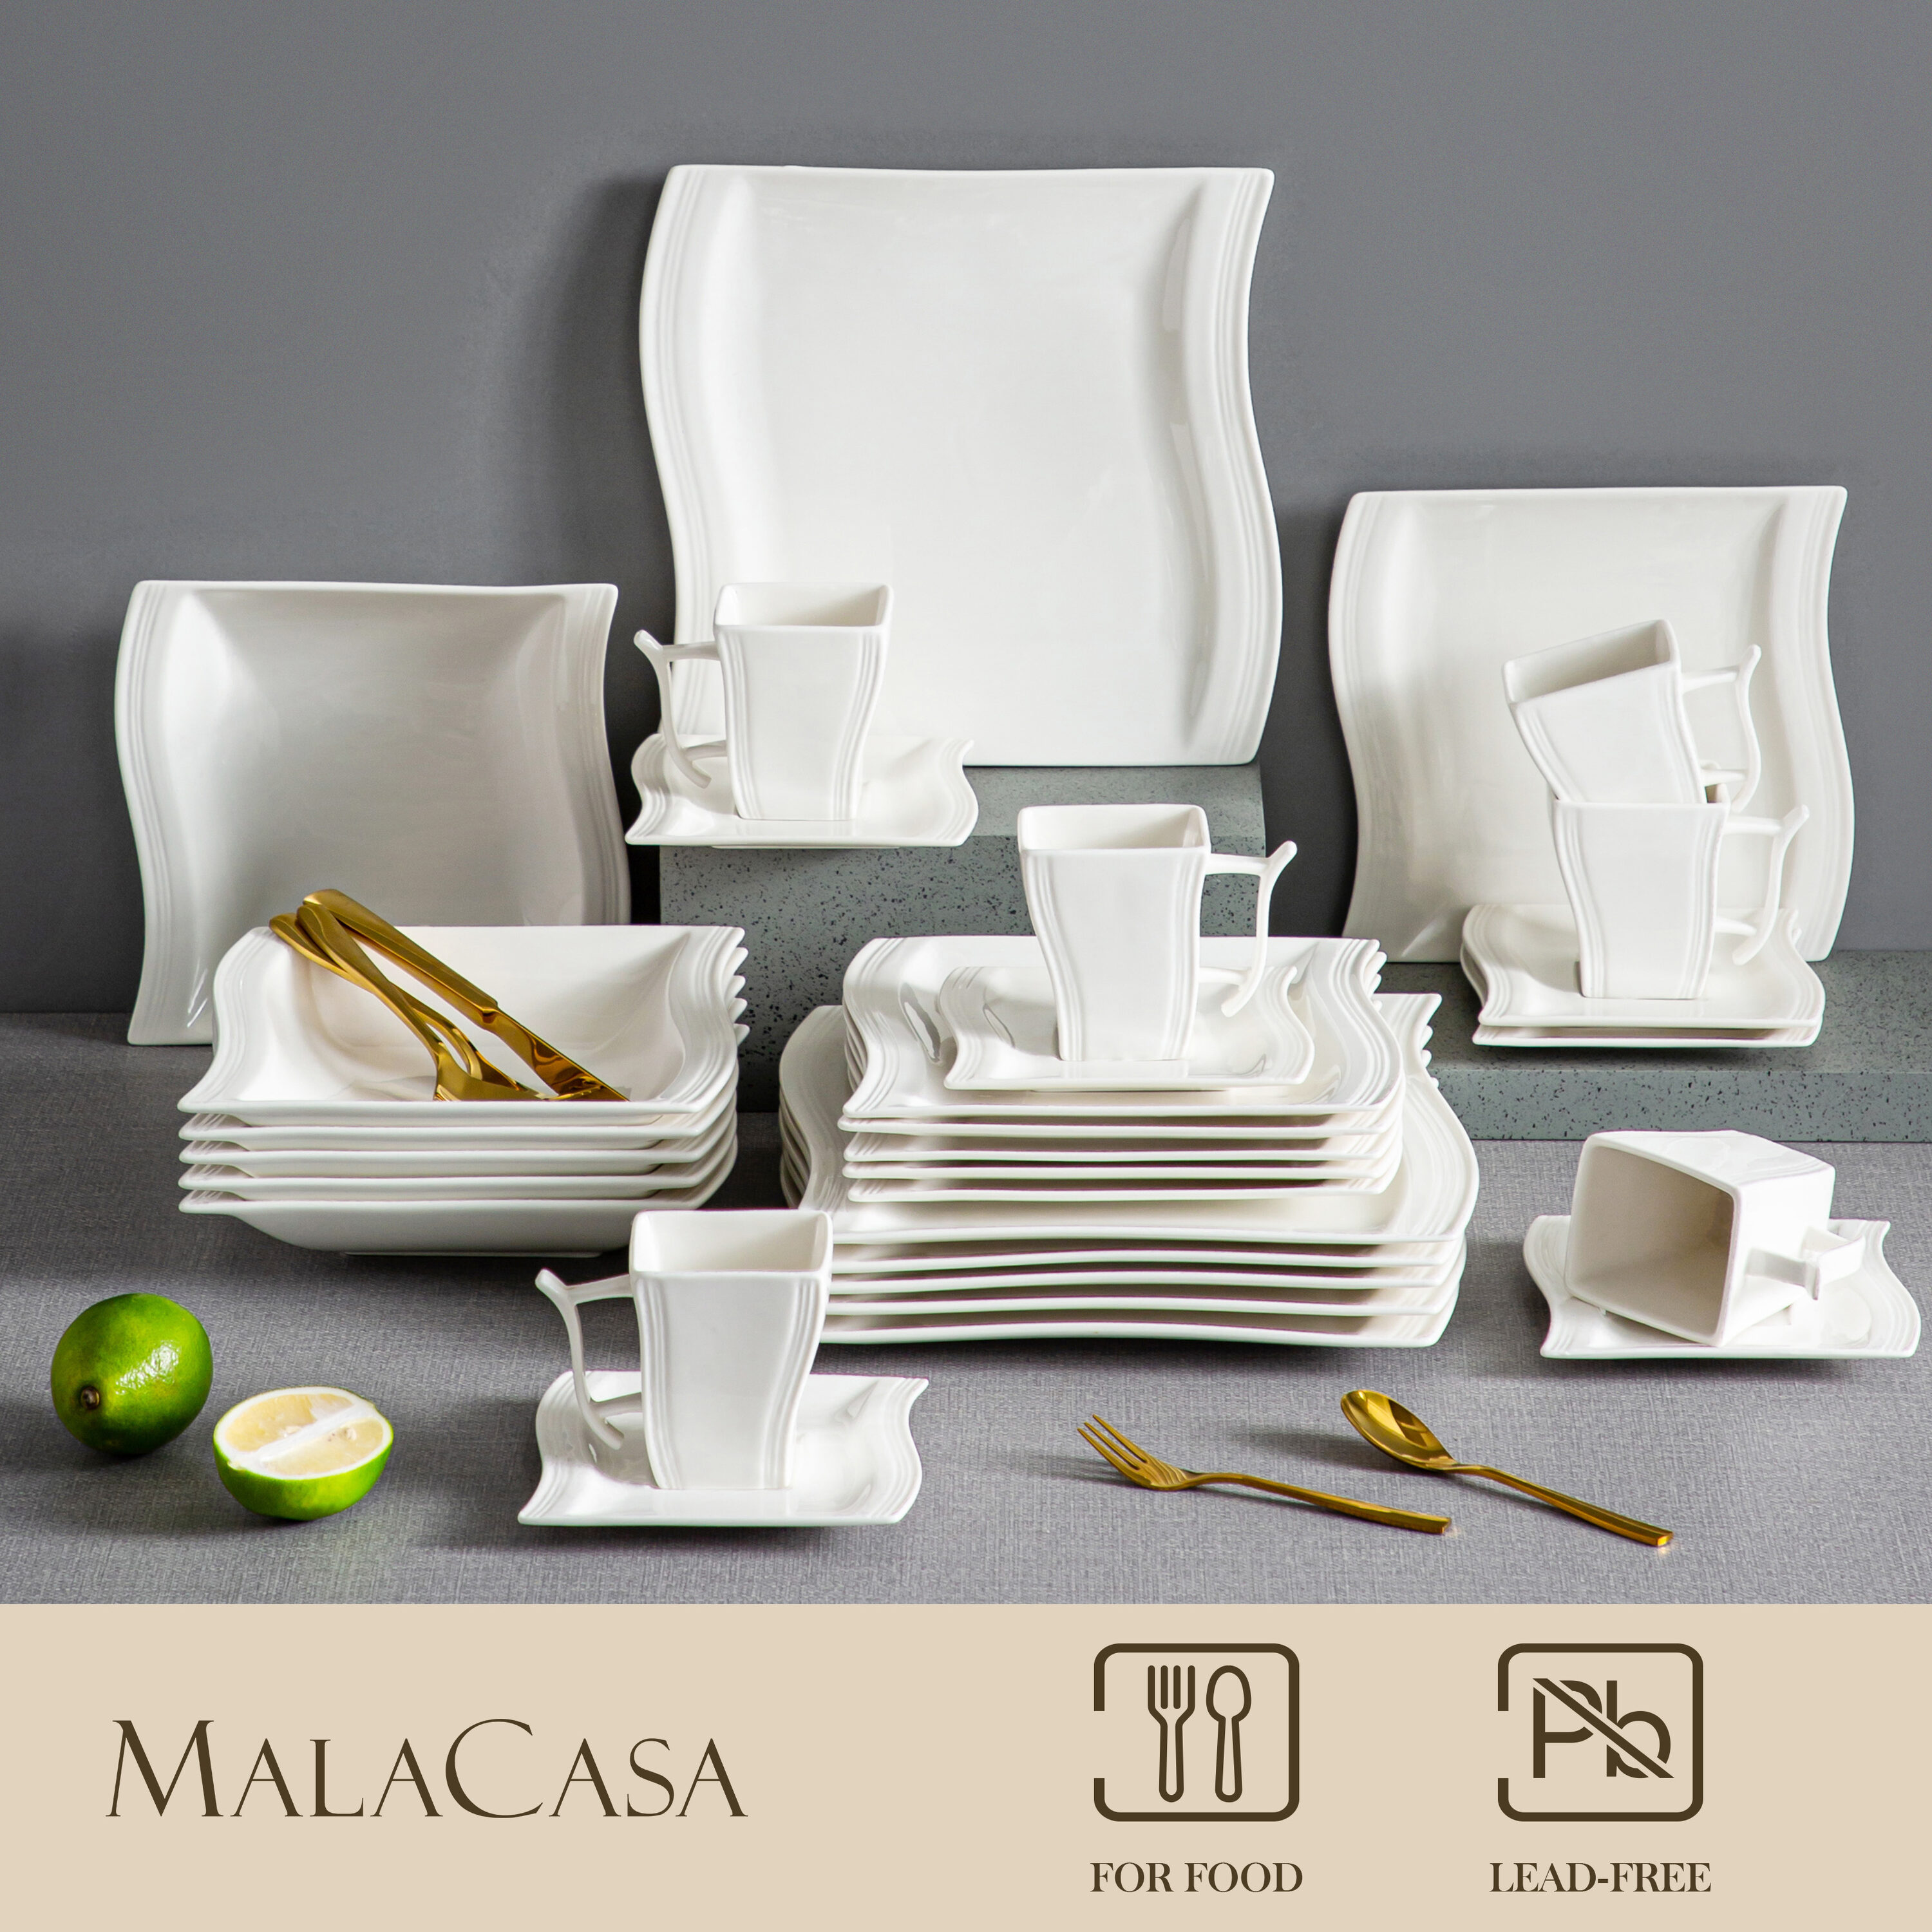 MALACASA Flora Porcelain China Dinnerware Set - Service for 6 & Reviews